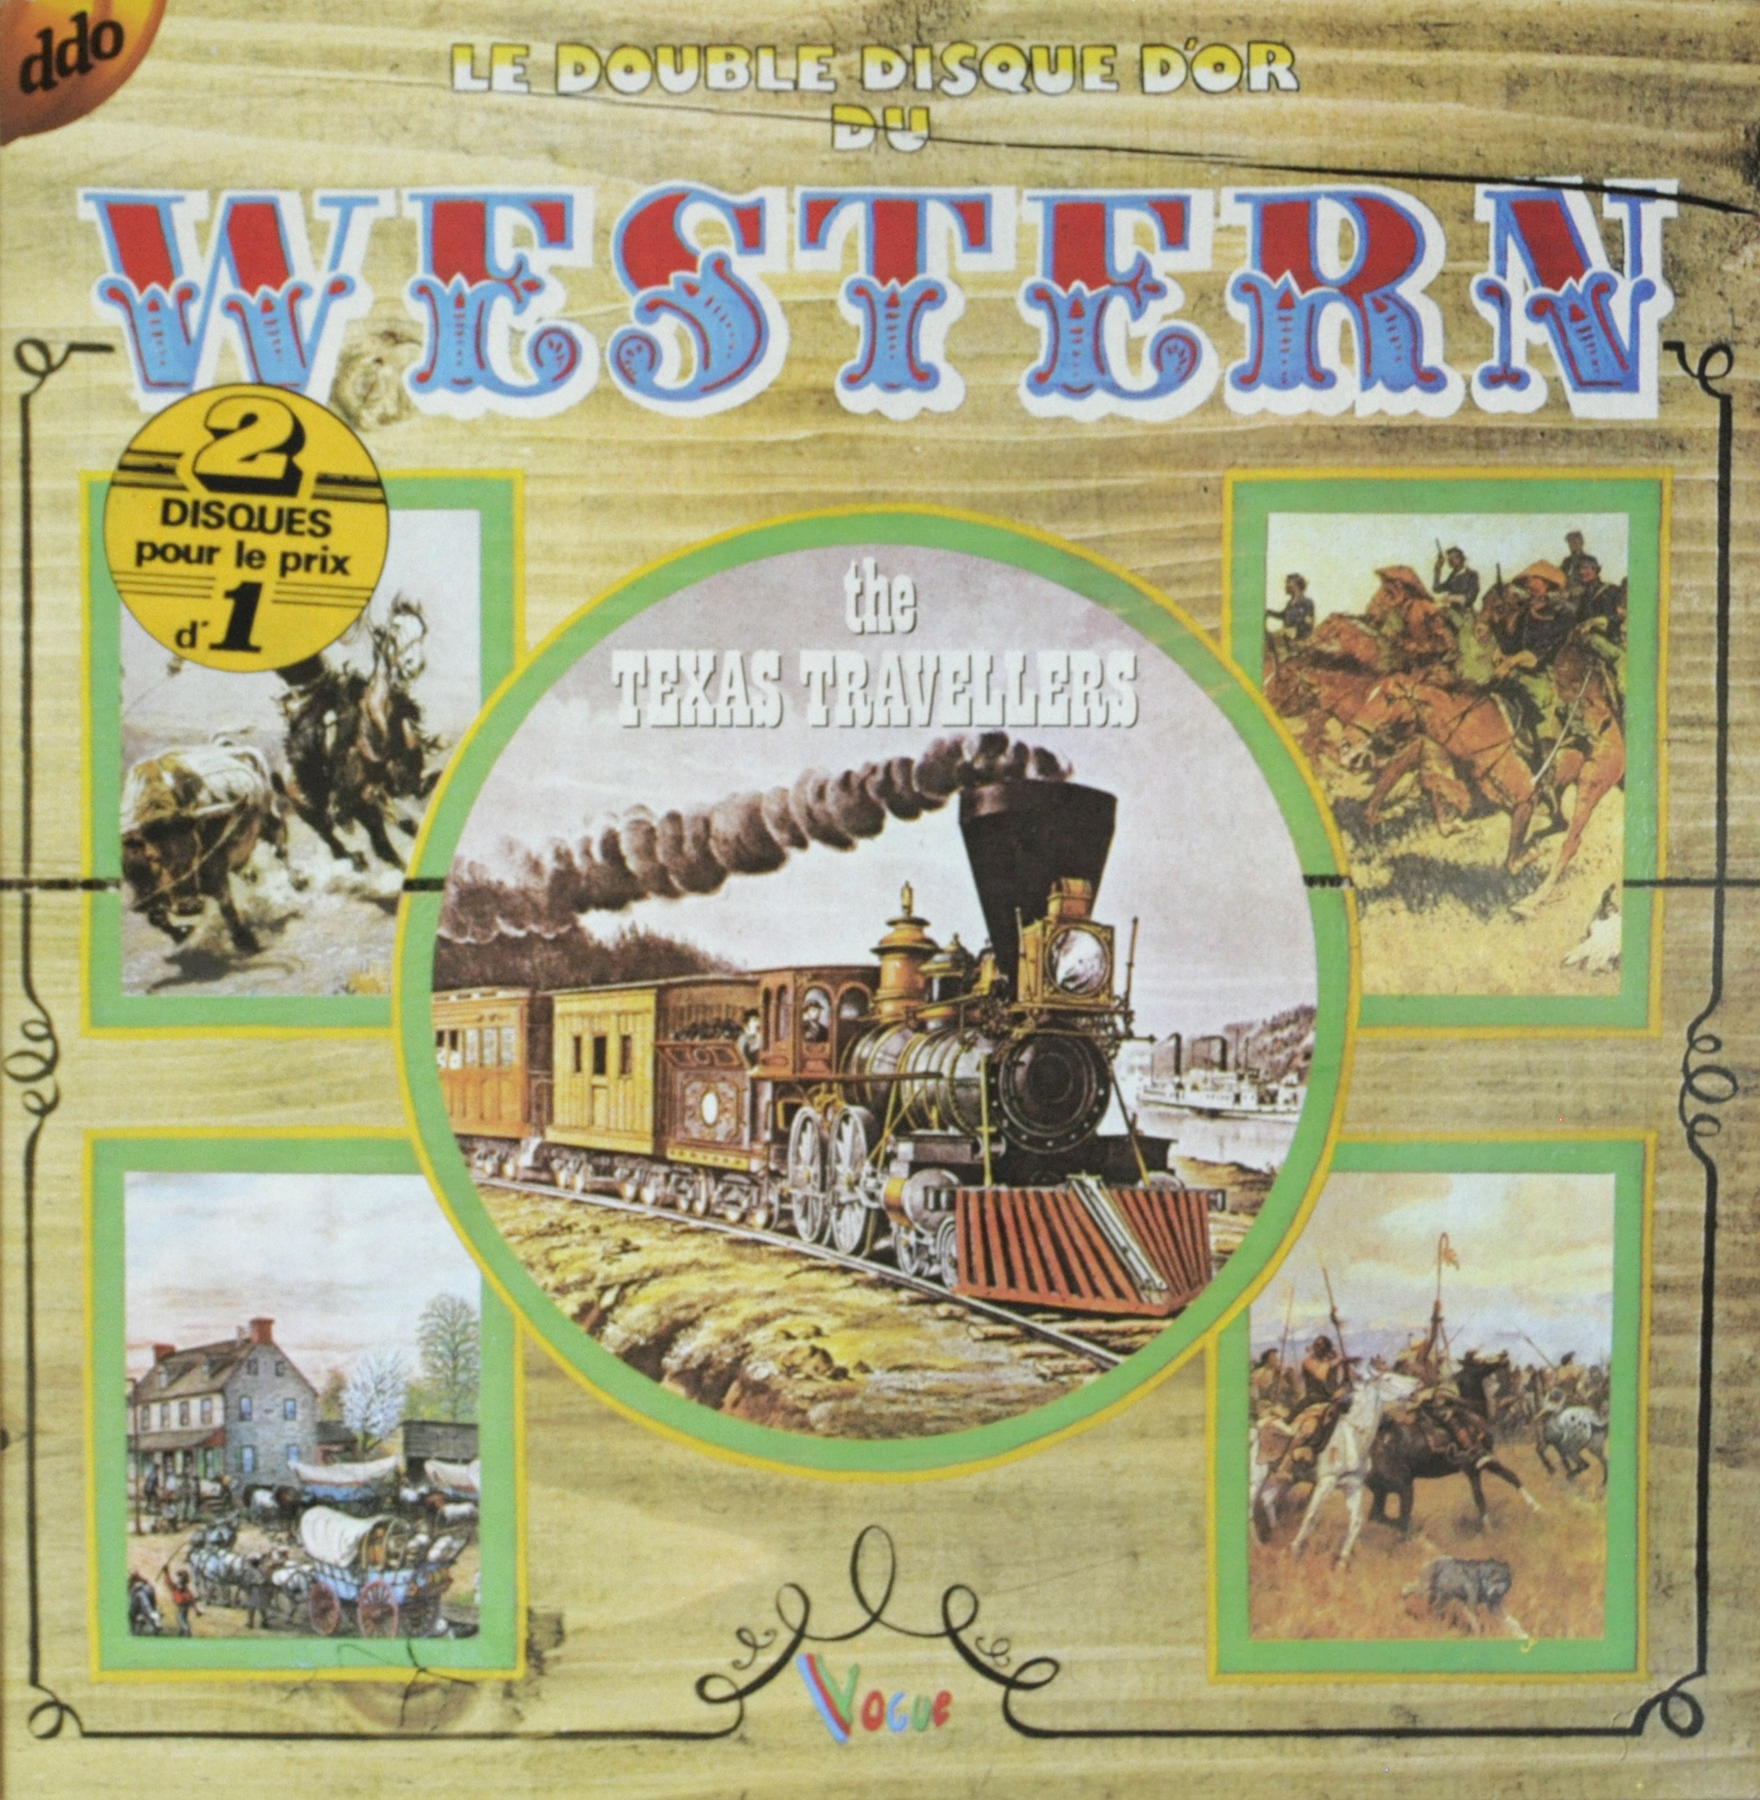 Acheter disque vinyle The Texas Travellers Le double disque d'or du Western a vendre